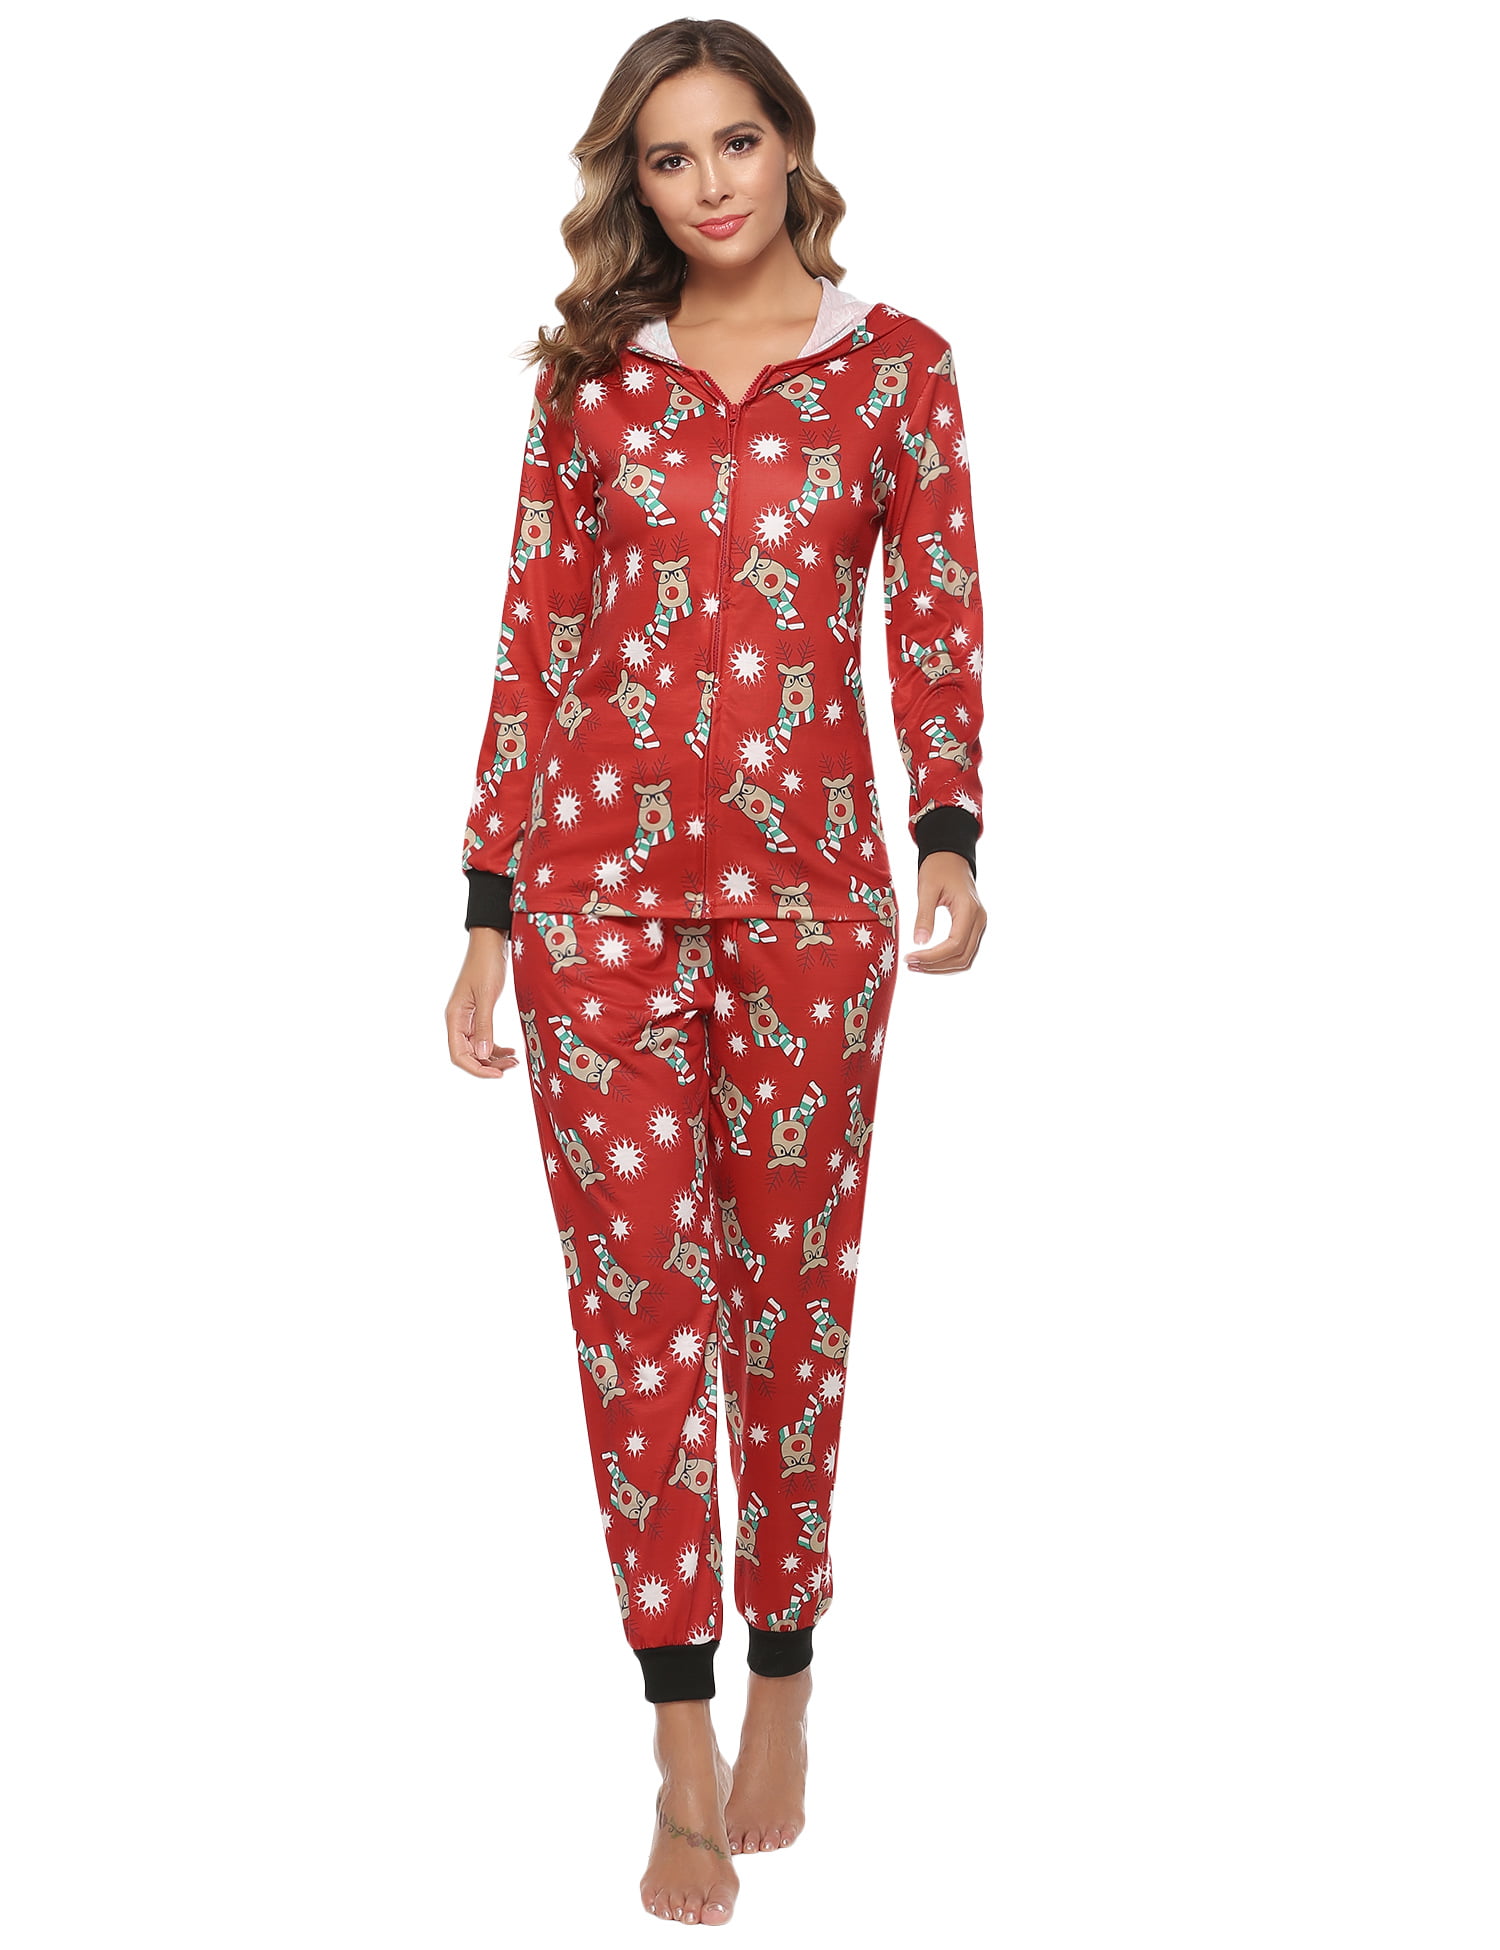 Hawiton Women Pyjamas Set Loungewear Full Length Top & Bottoms Sleepwear Cotton PJs Set Jogging Style Nightwear 